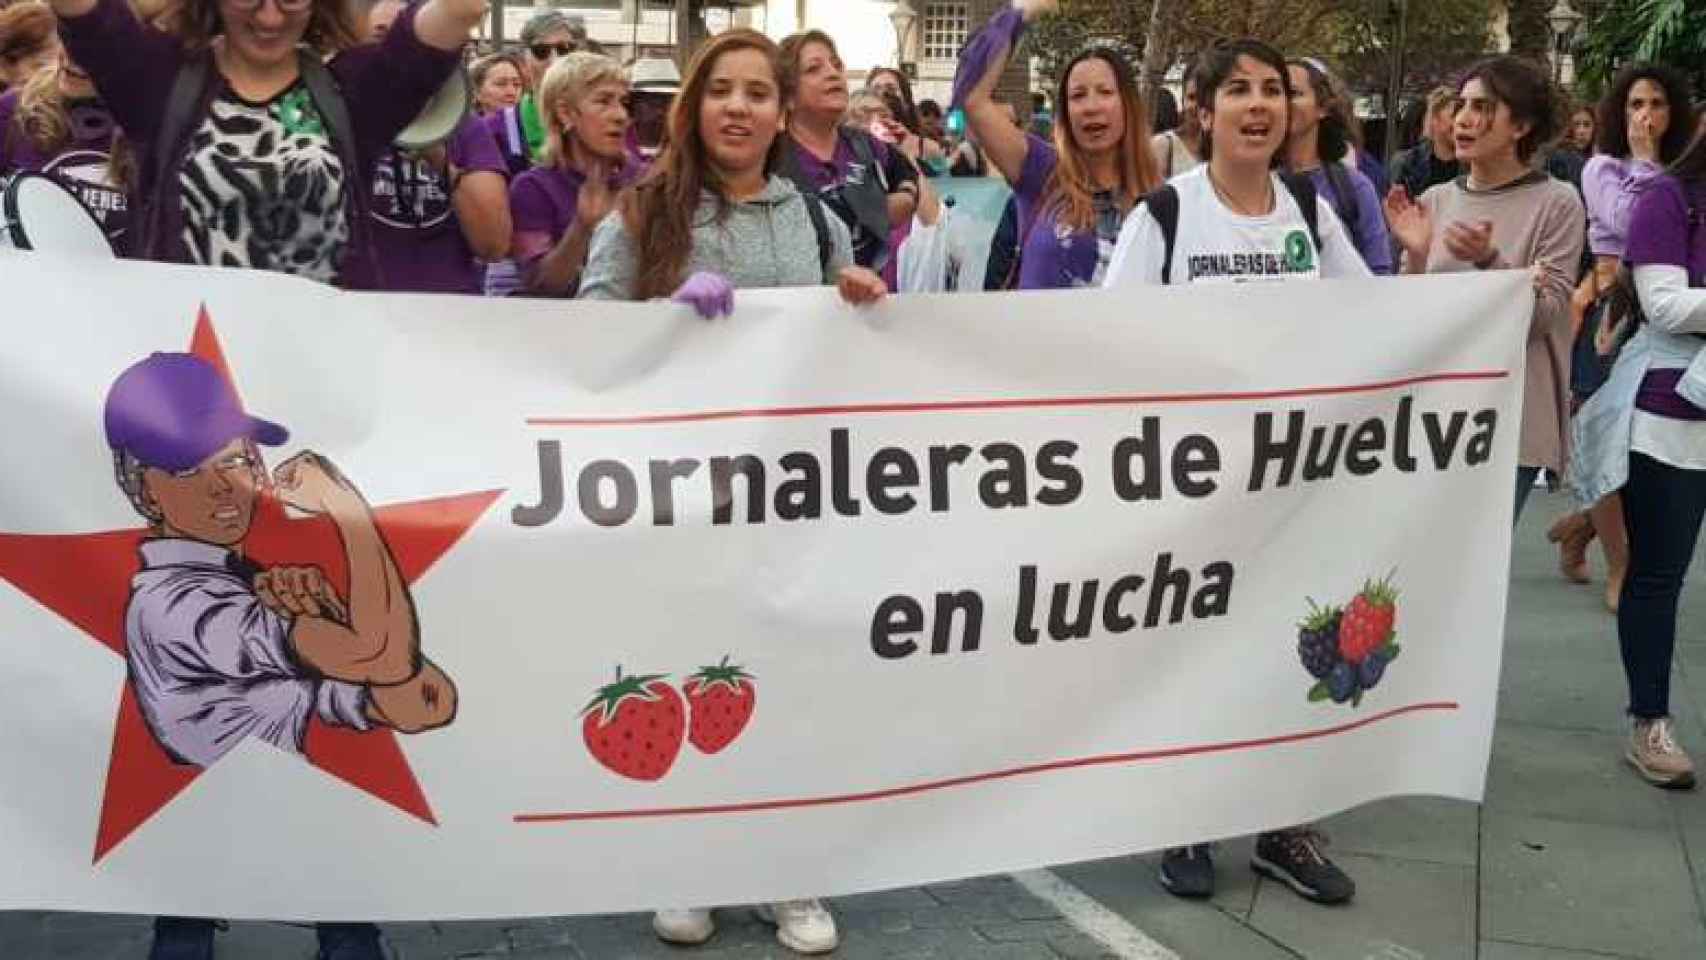 Un acto reivindicativo del colectivo Jornaleras de Huelva en Lucha.